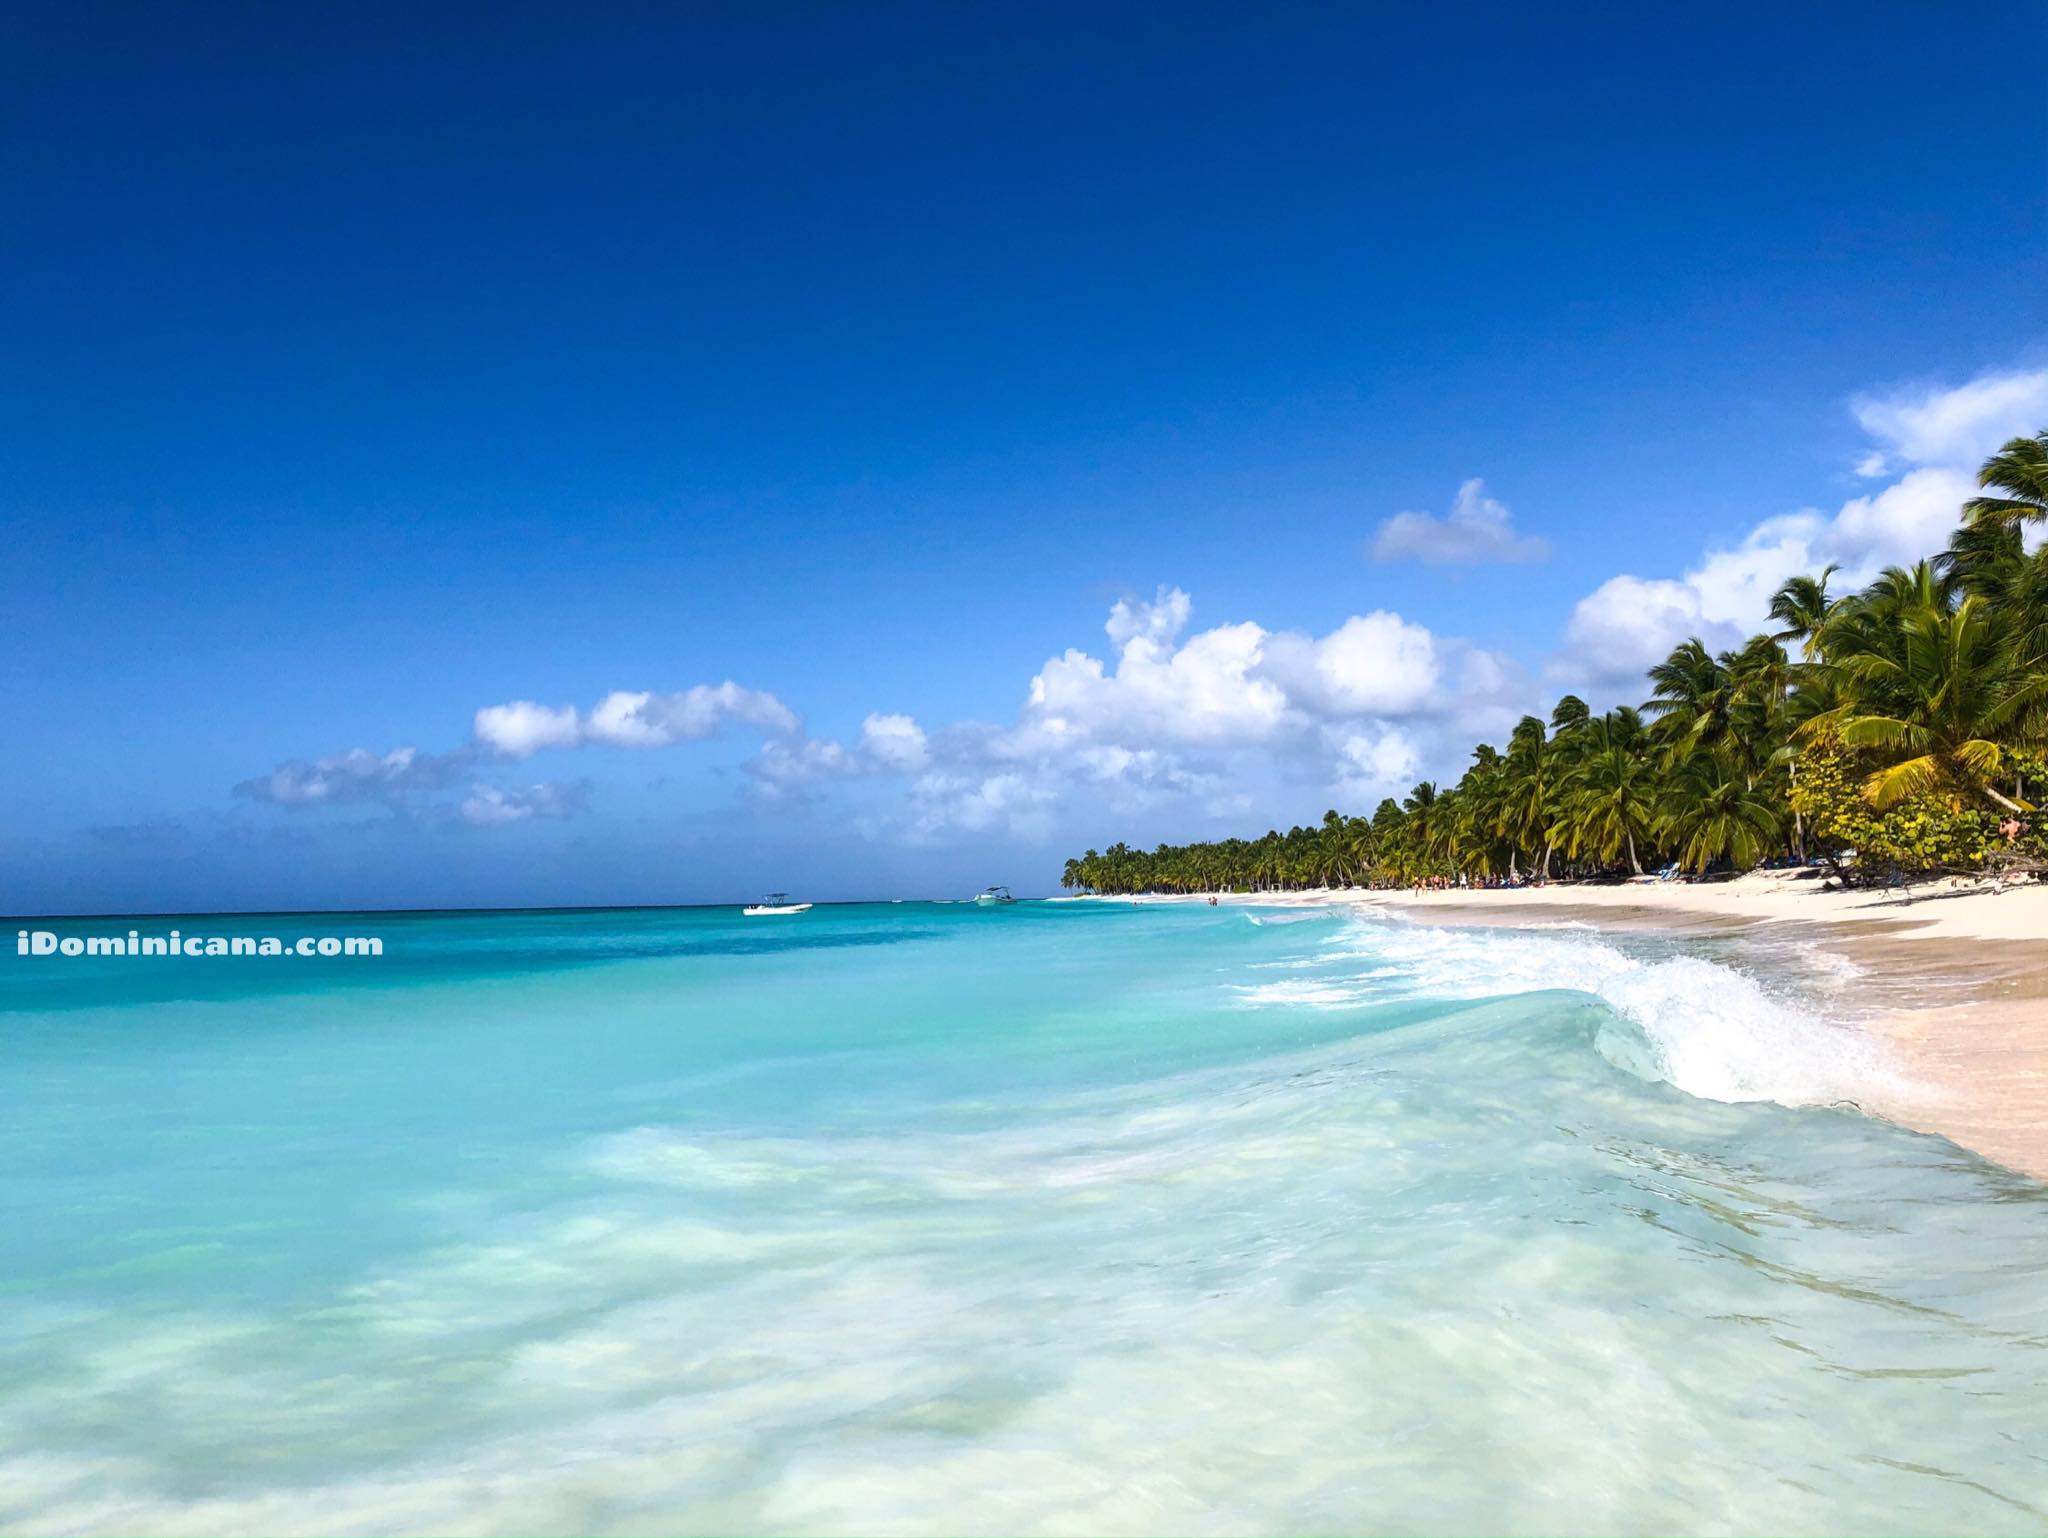 Остров Саона 2020: экскурсии, пляжи, цены, настоящие фото iDominicana.com